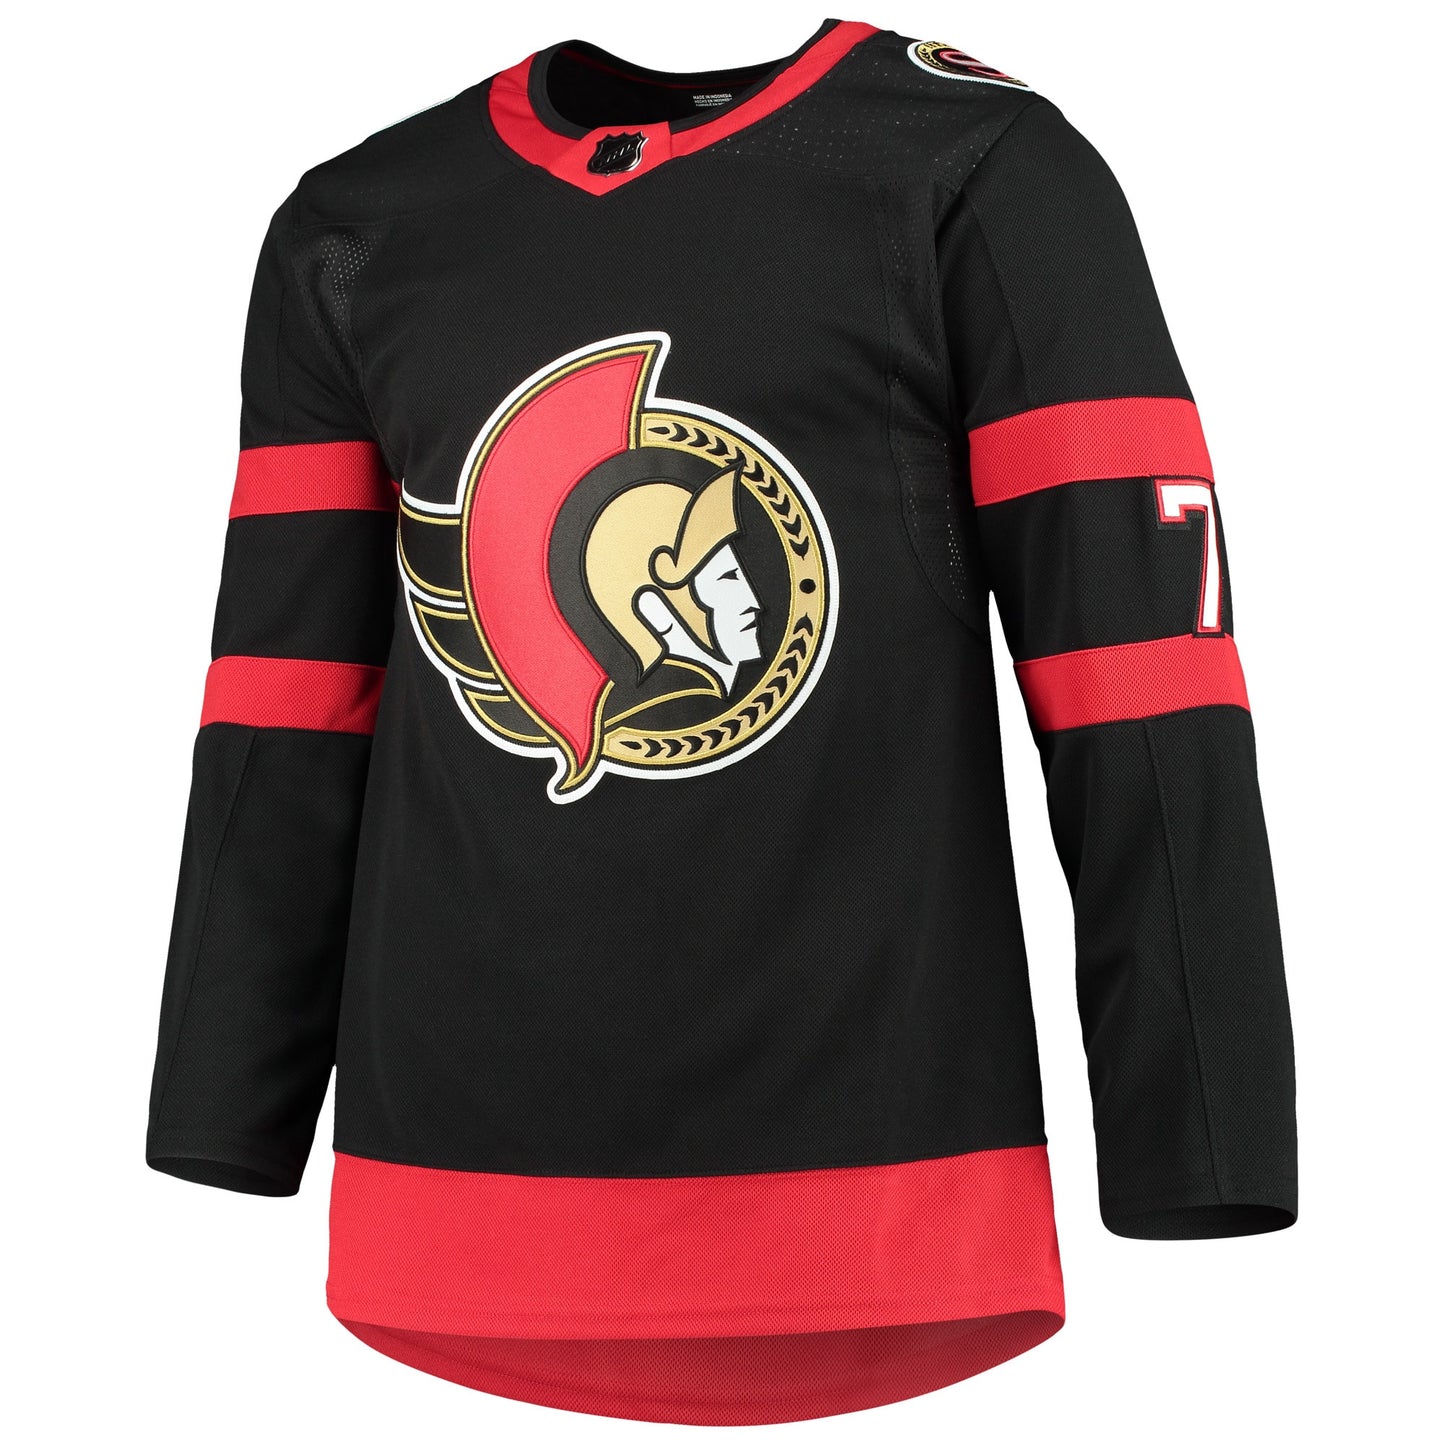 Brady Tkachuk Ottawa Senators adidas Home Primegreen Authentic Pro Player Jersey - Black